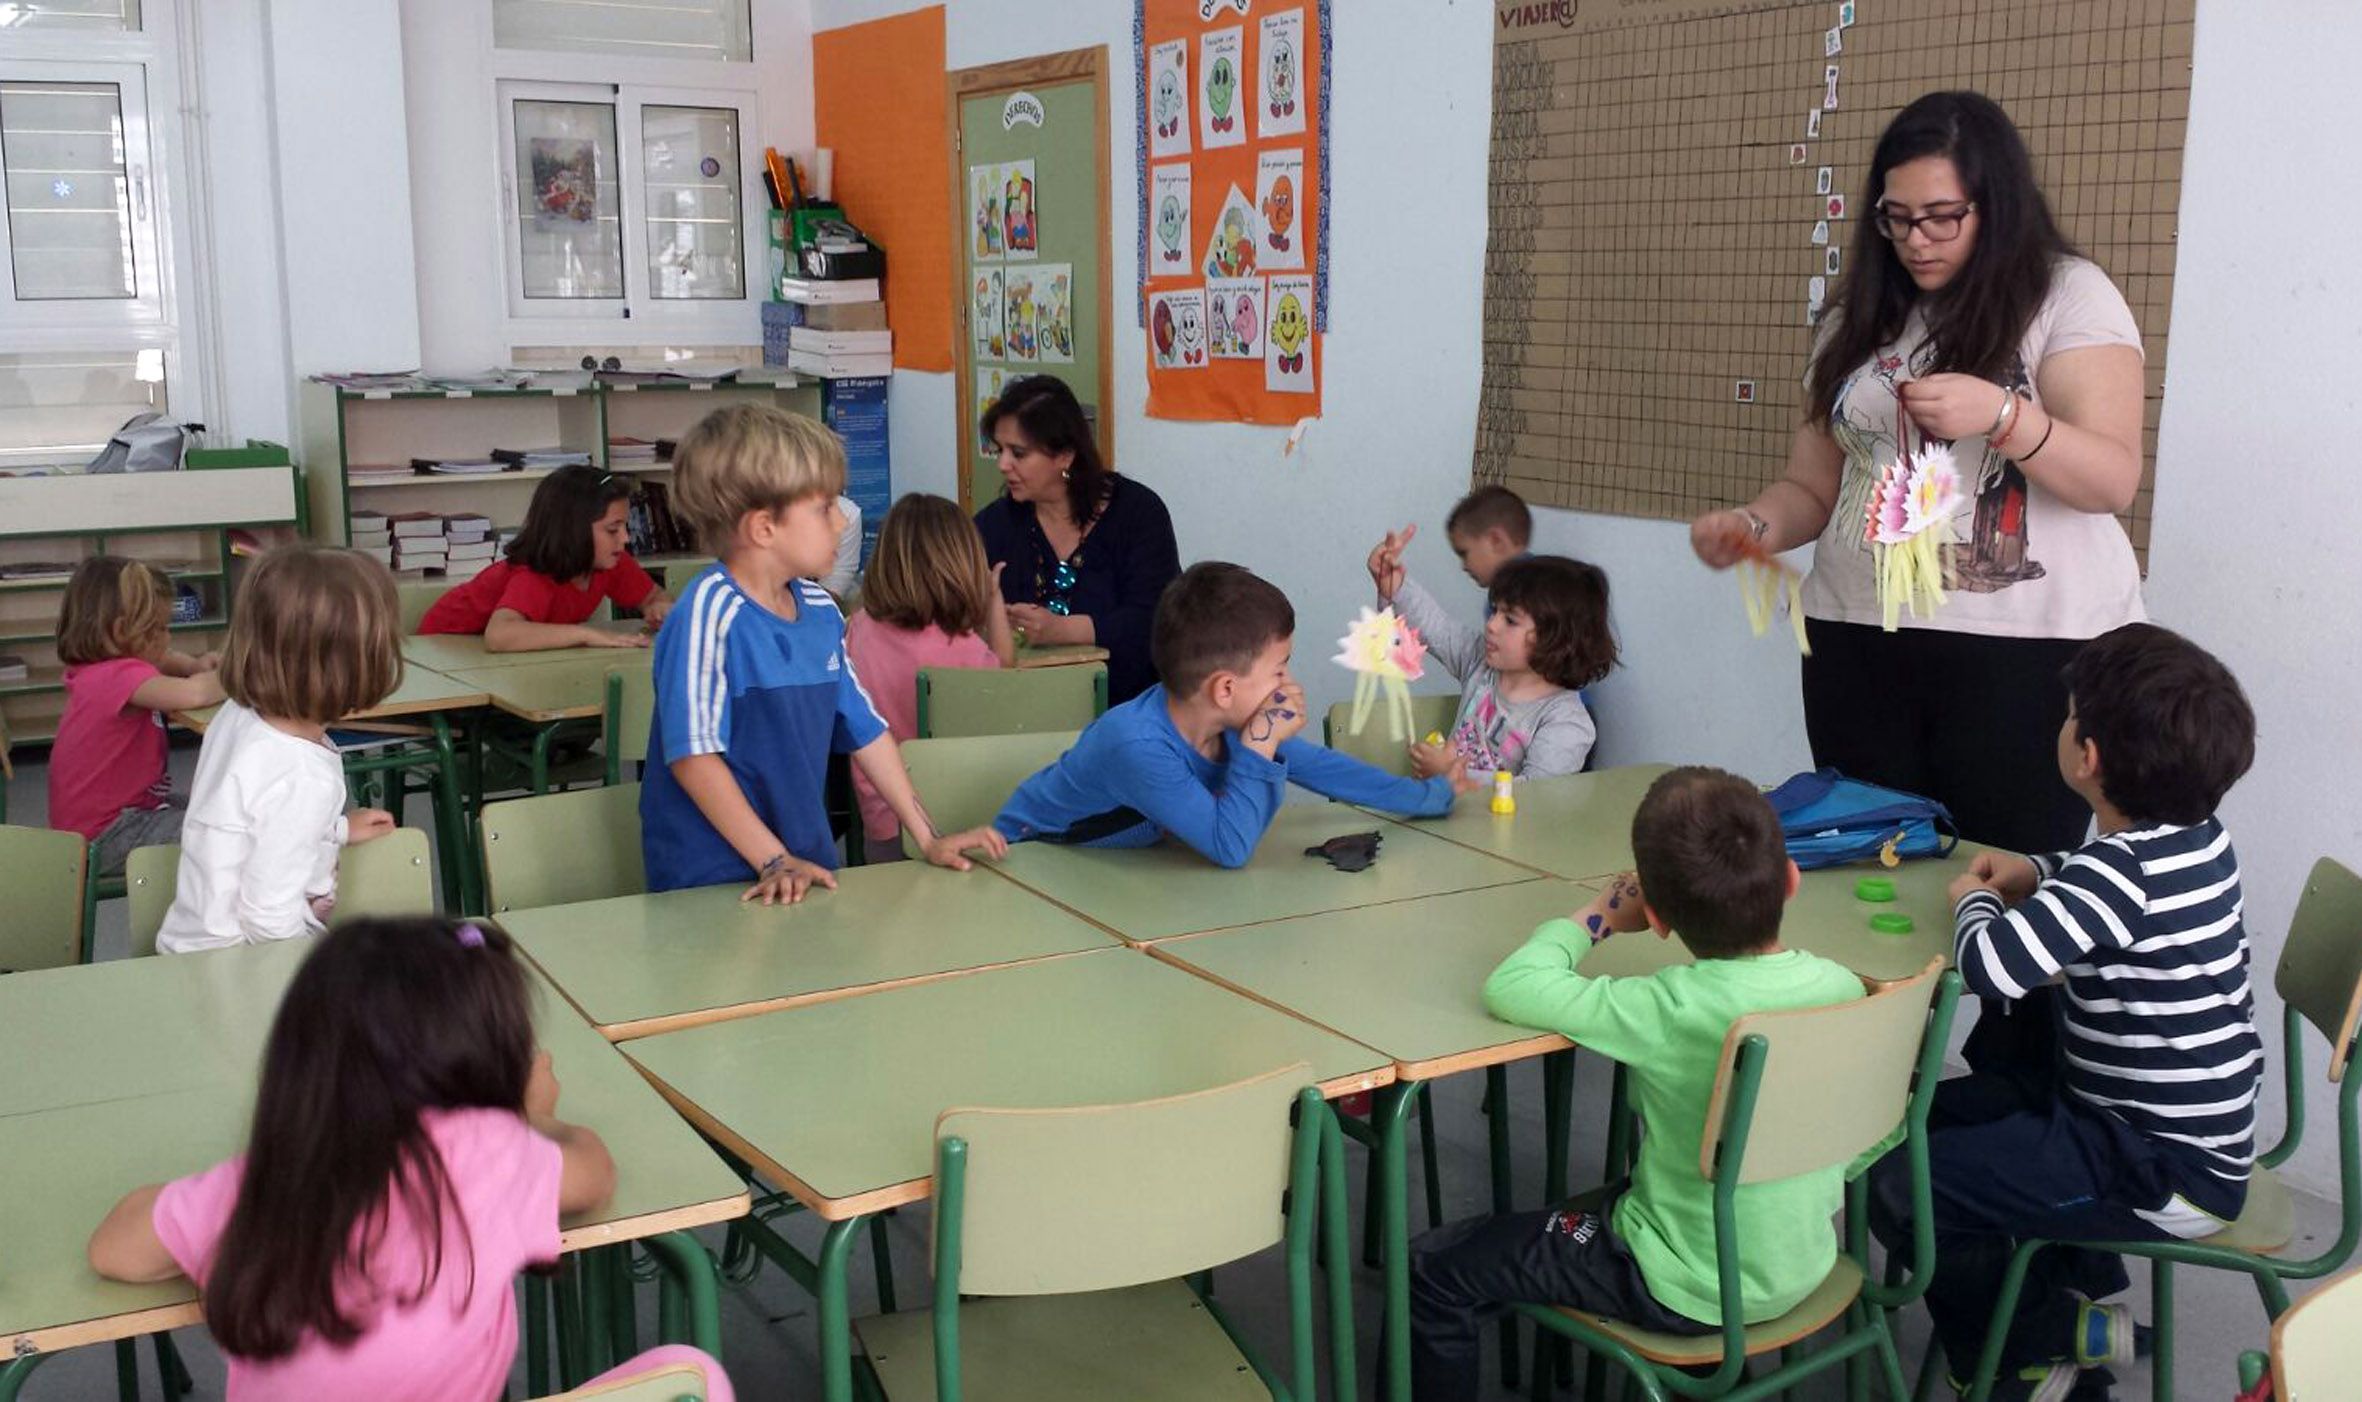 Escuela Semana Santa - Las Torres de Cotillas3